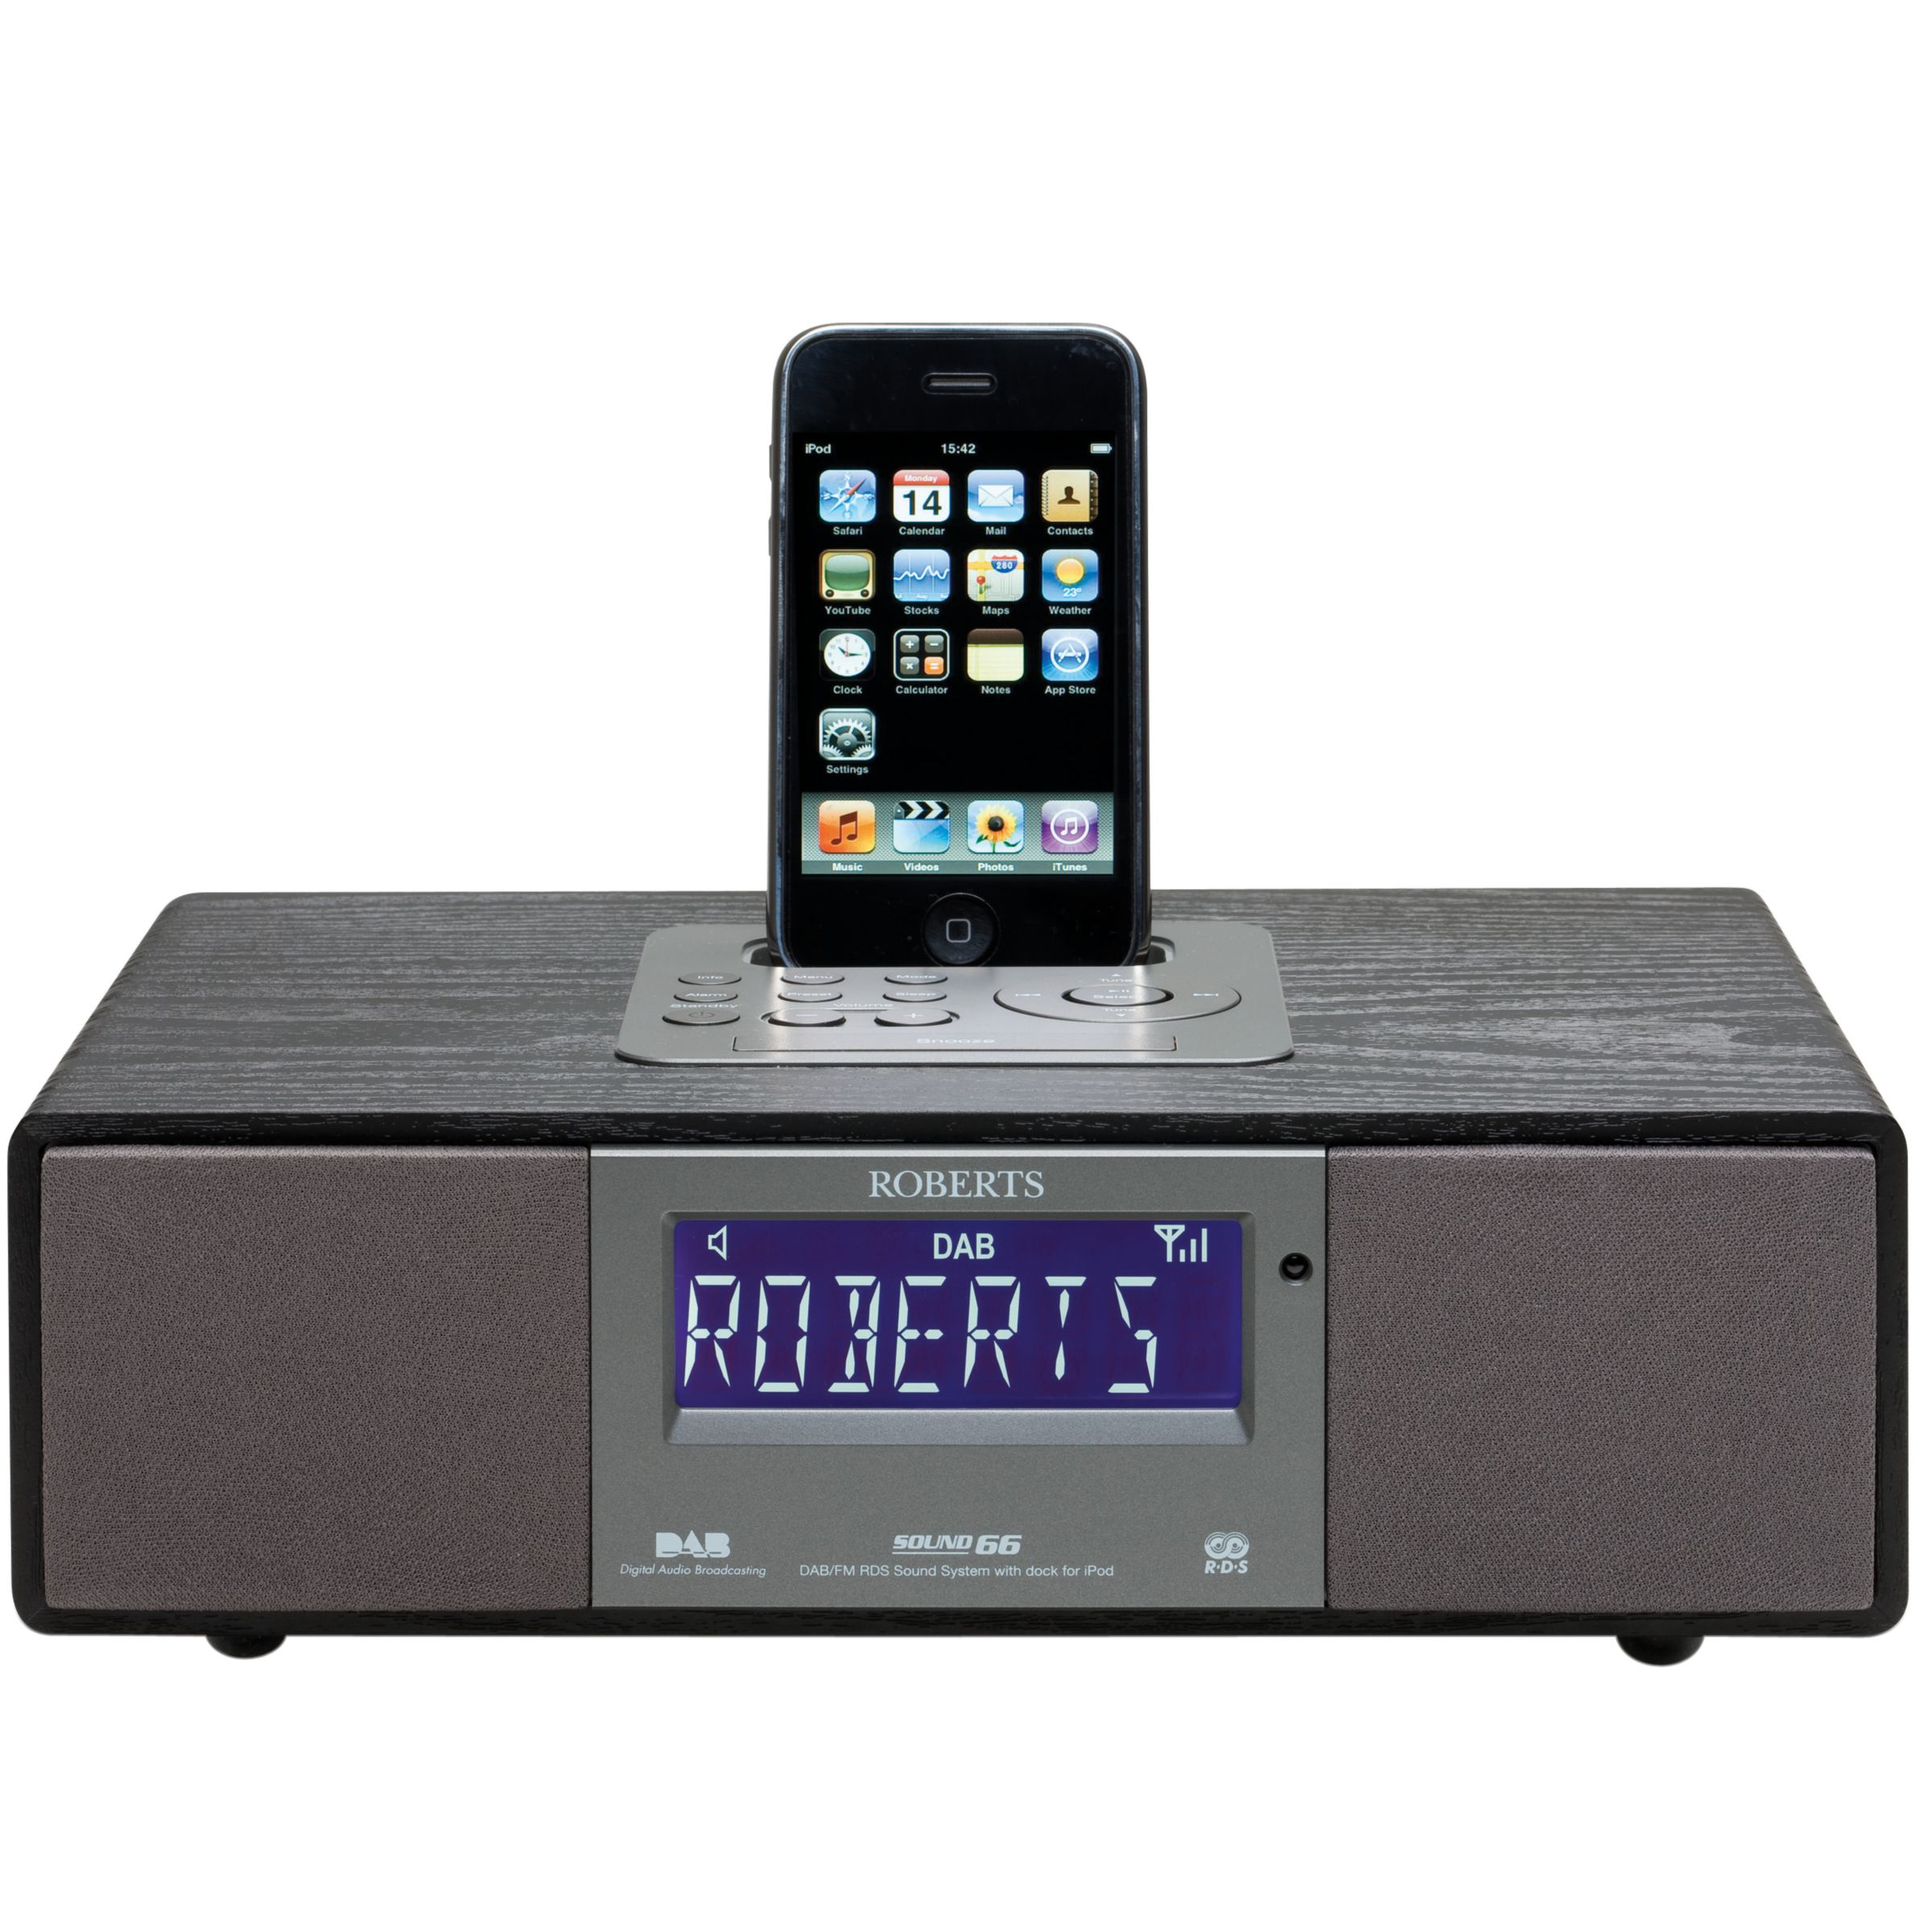 ROBERTS SOUND 66 DAB/iPod Dock Radio at John Lewis